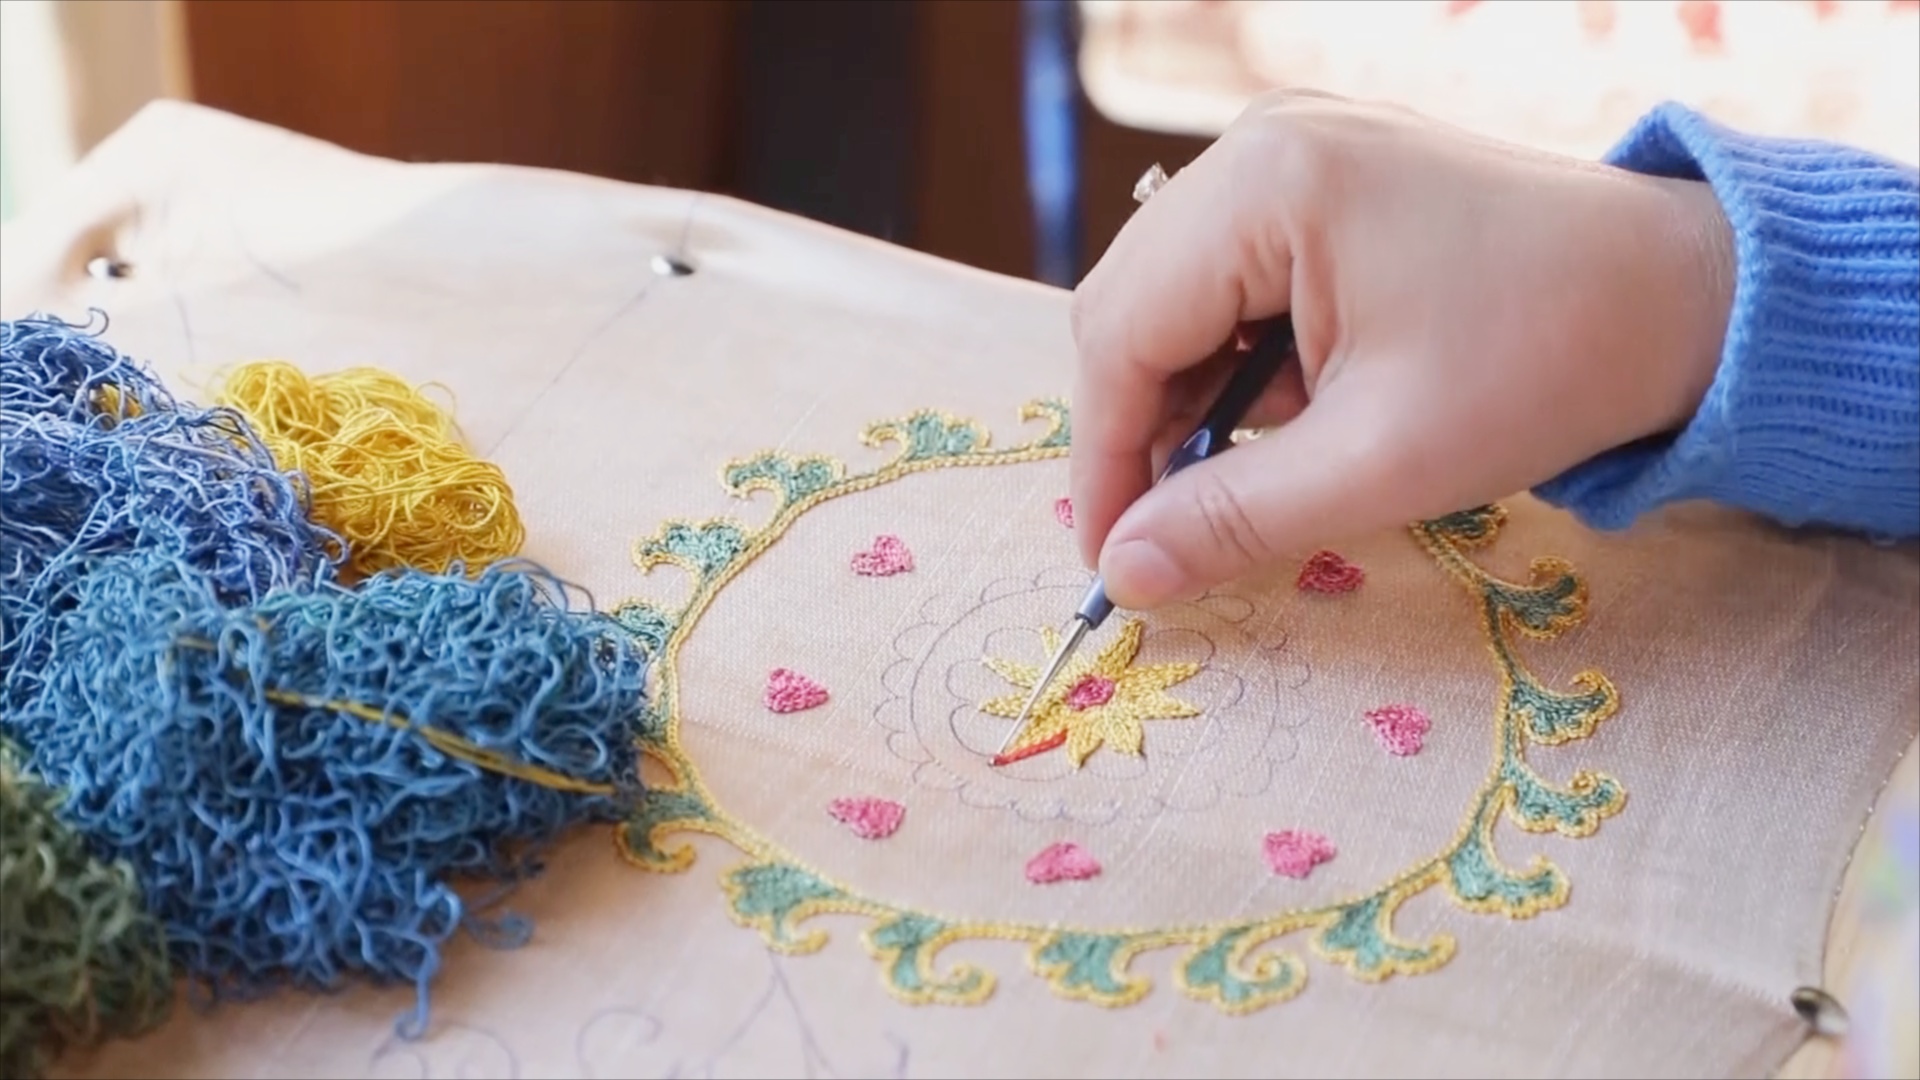 Традиционная центральноазиатская вышивка претендует на признание ЮНЕСКО